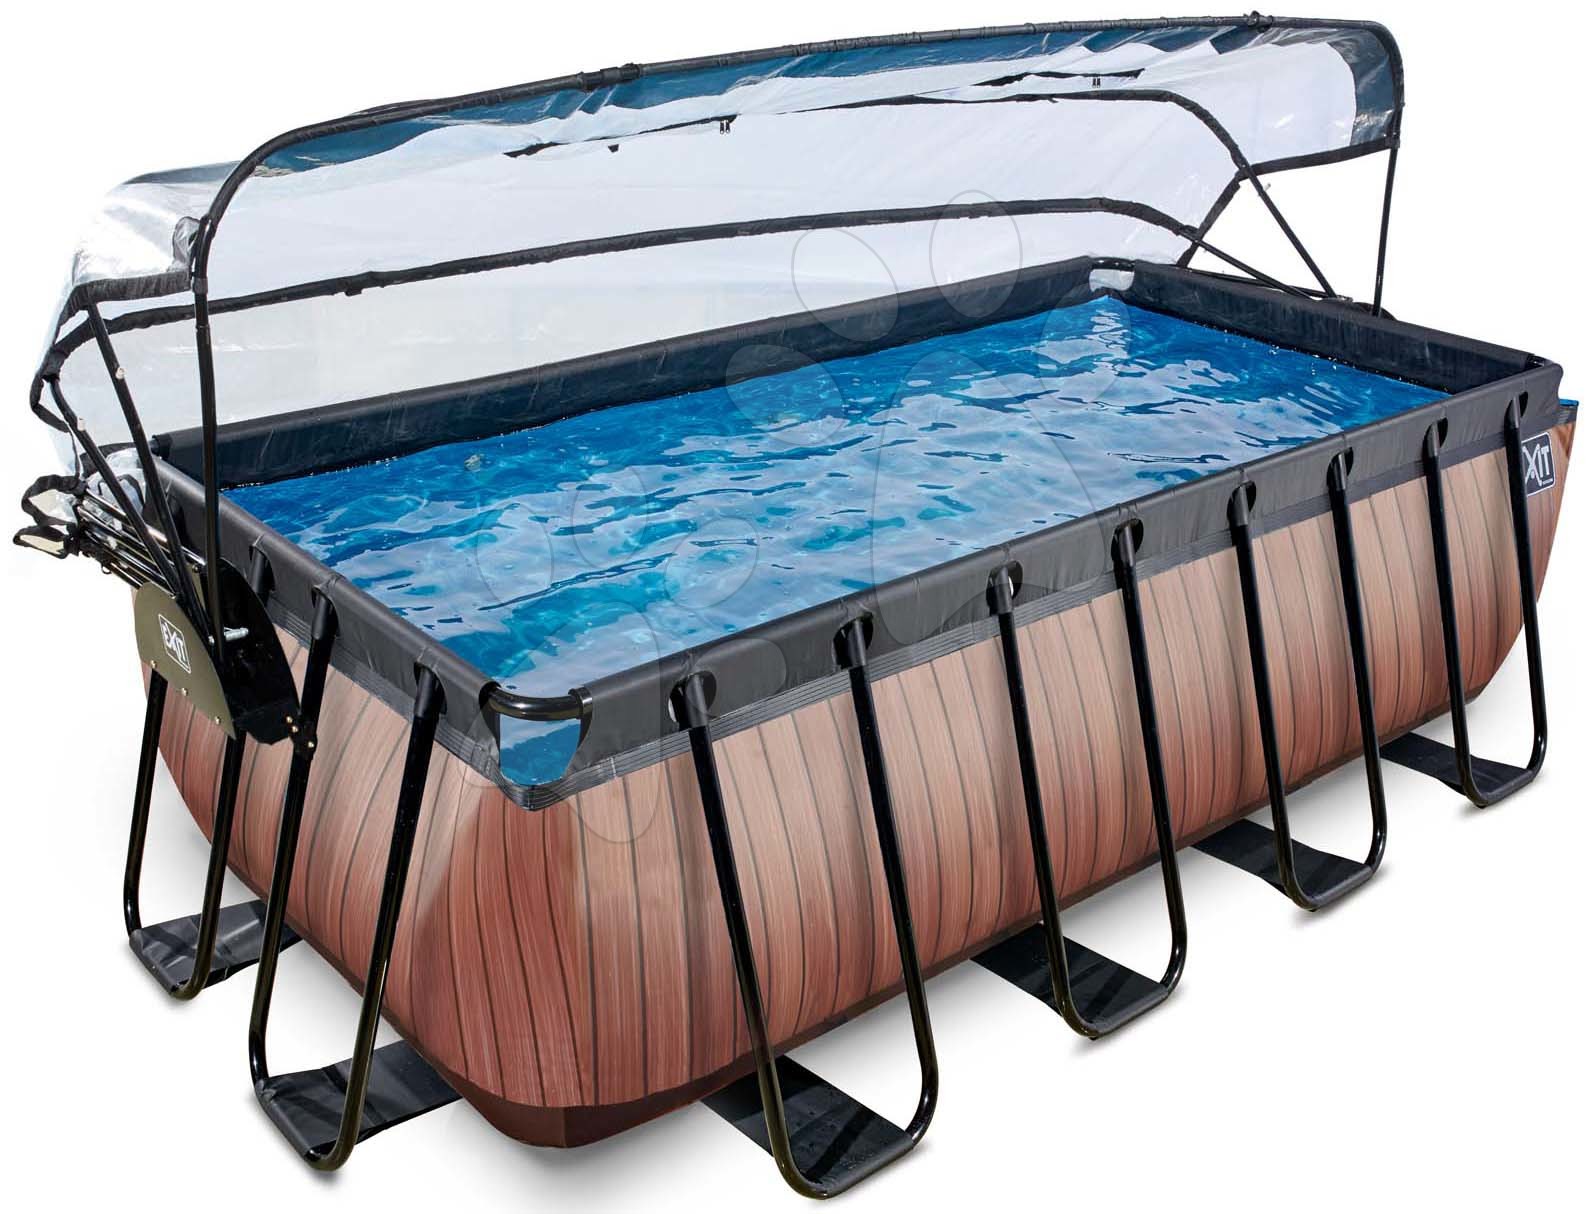 Bazén s krytem a pískovou filtrací Wood pool Exit Toys ocelová konstrukce 400*200*122 cm hnědý od 6 let